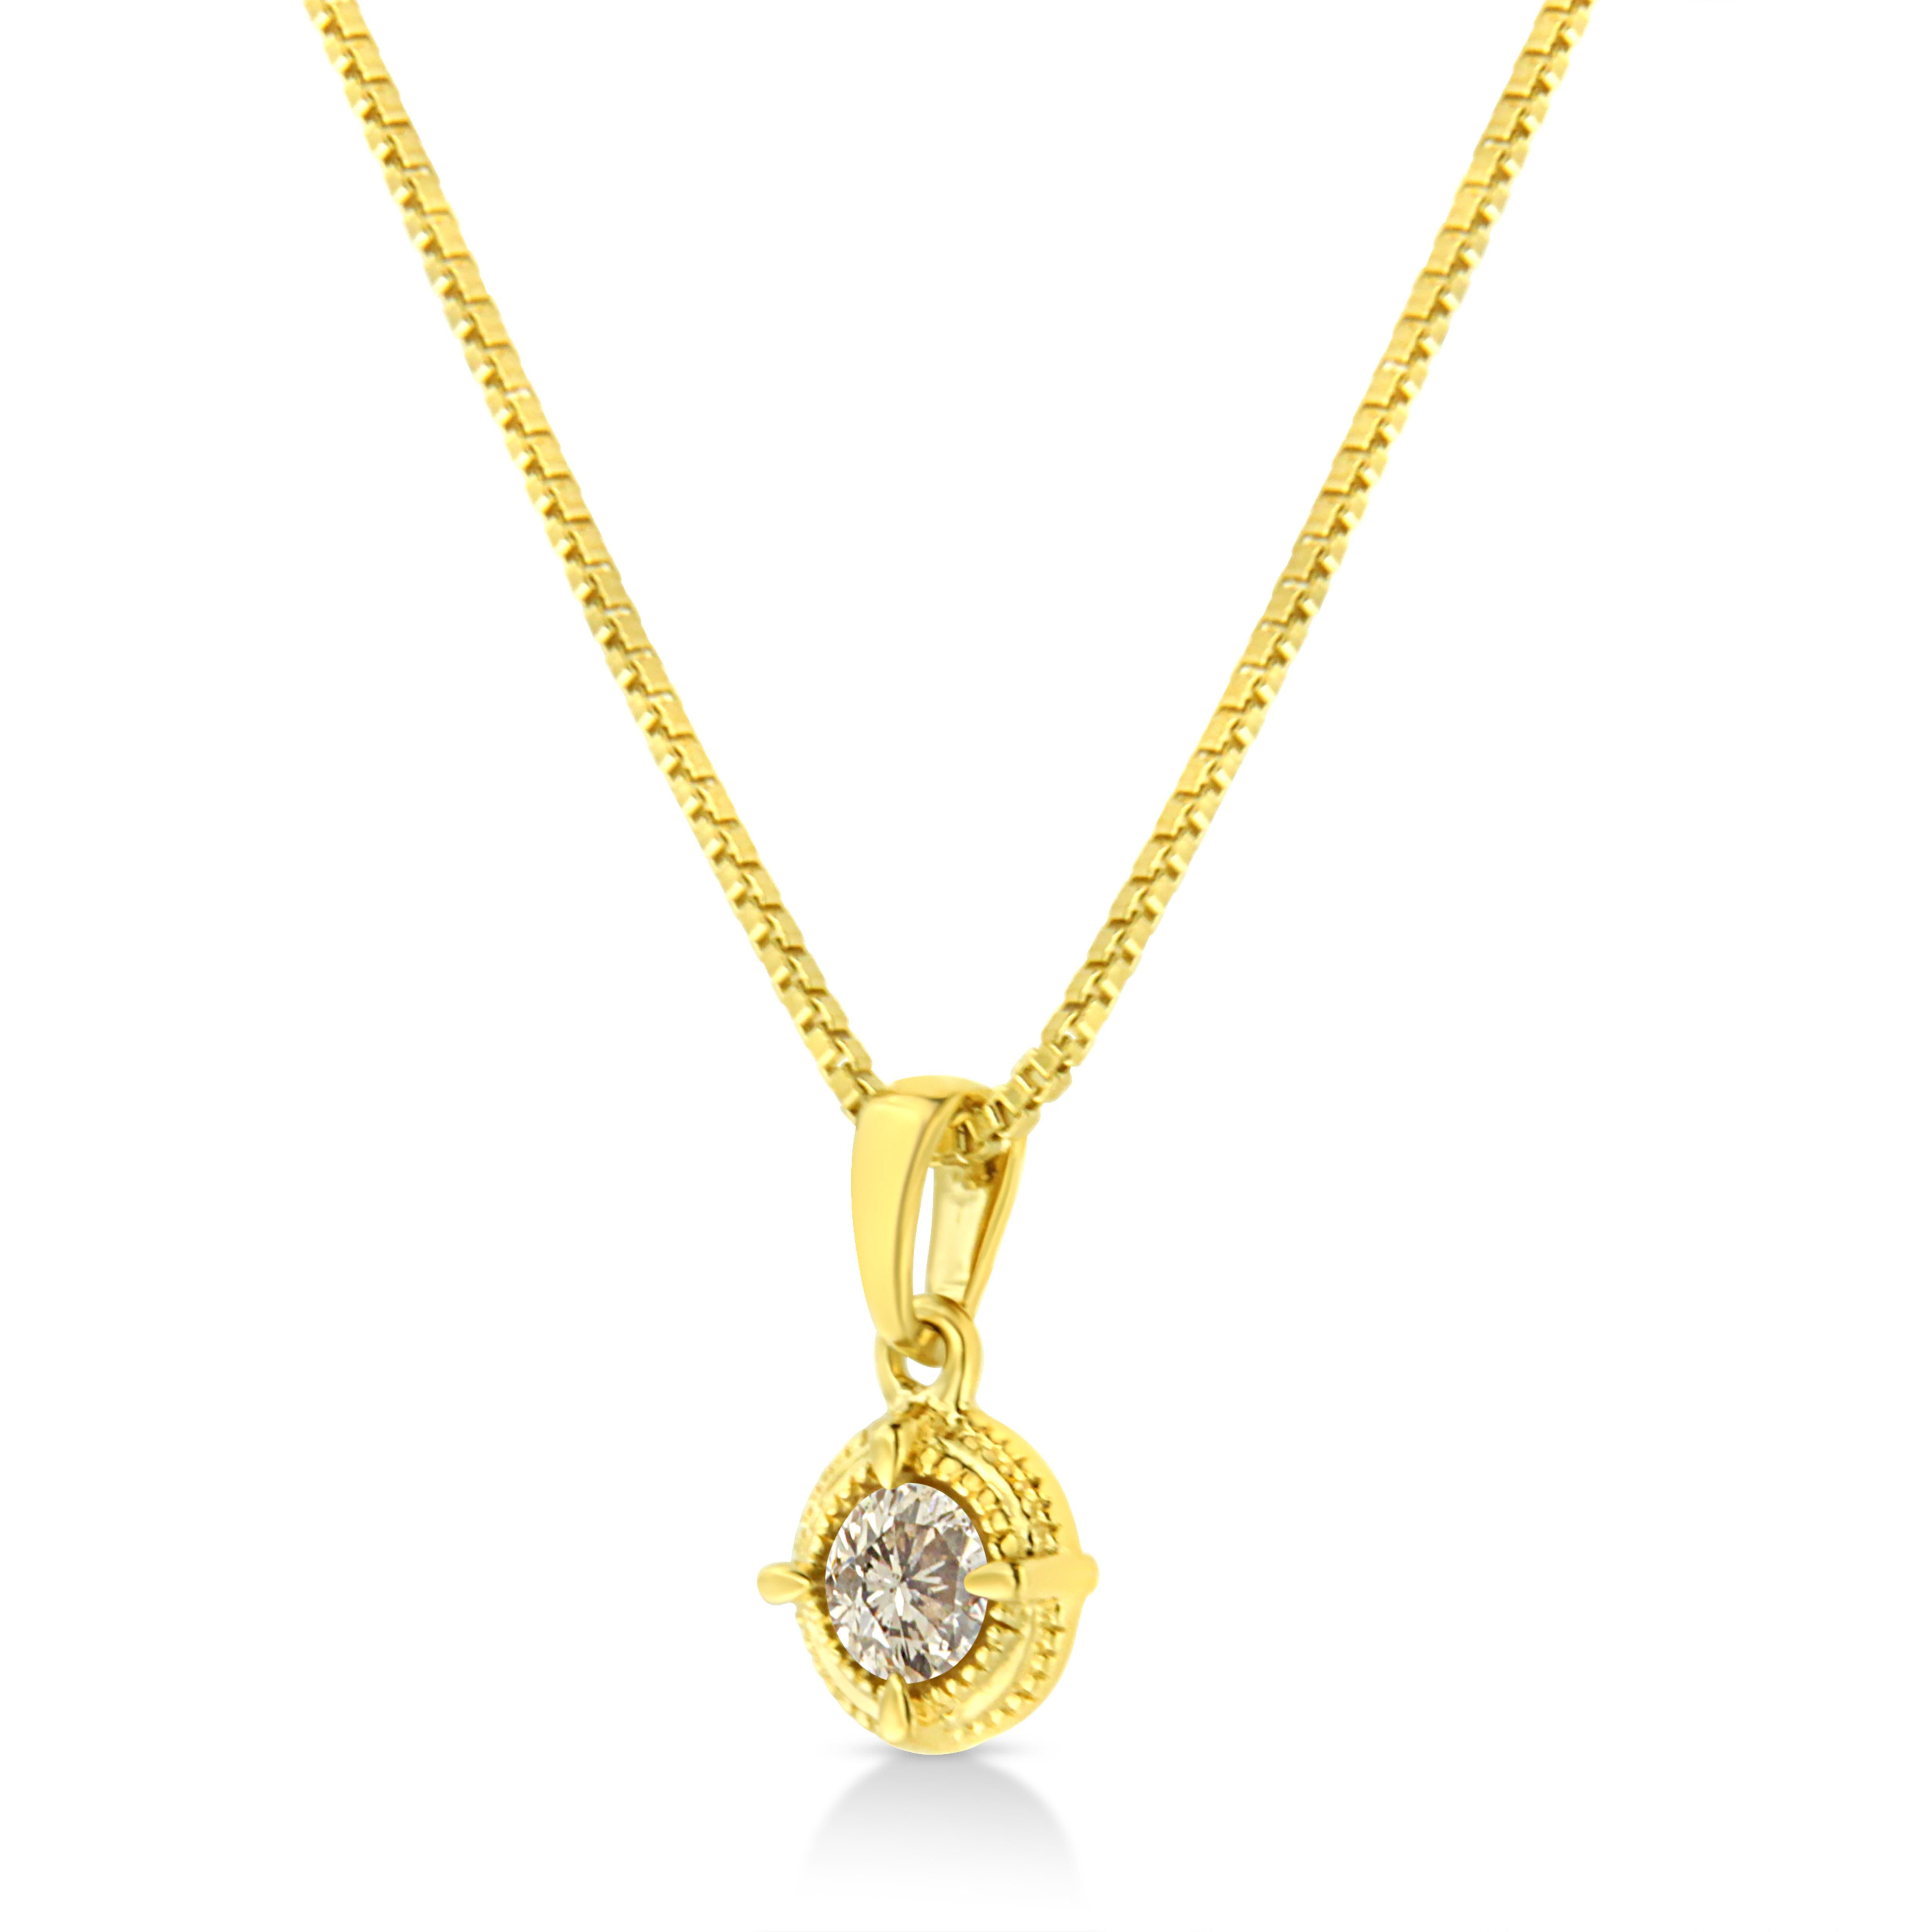 3/4 carat diamond pendant necklace